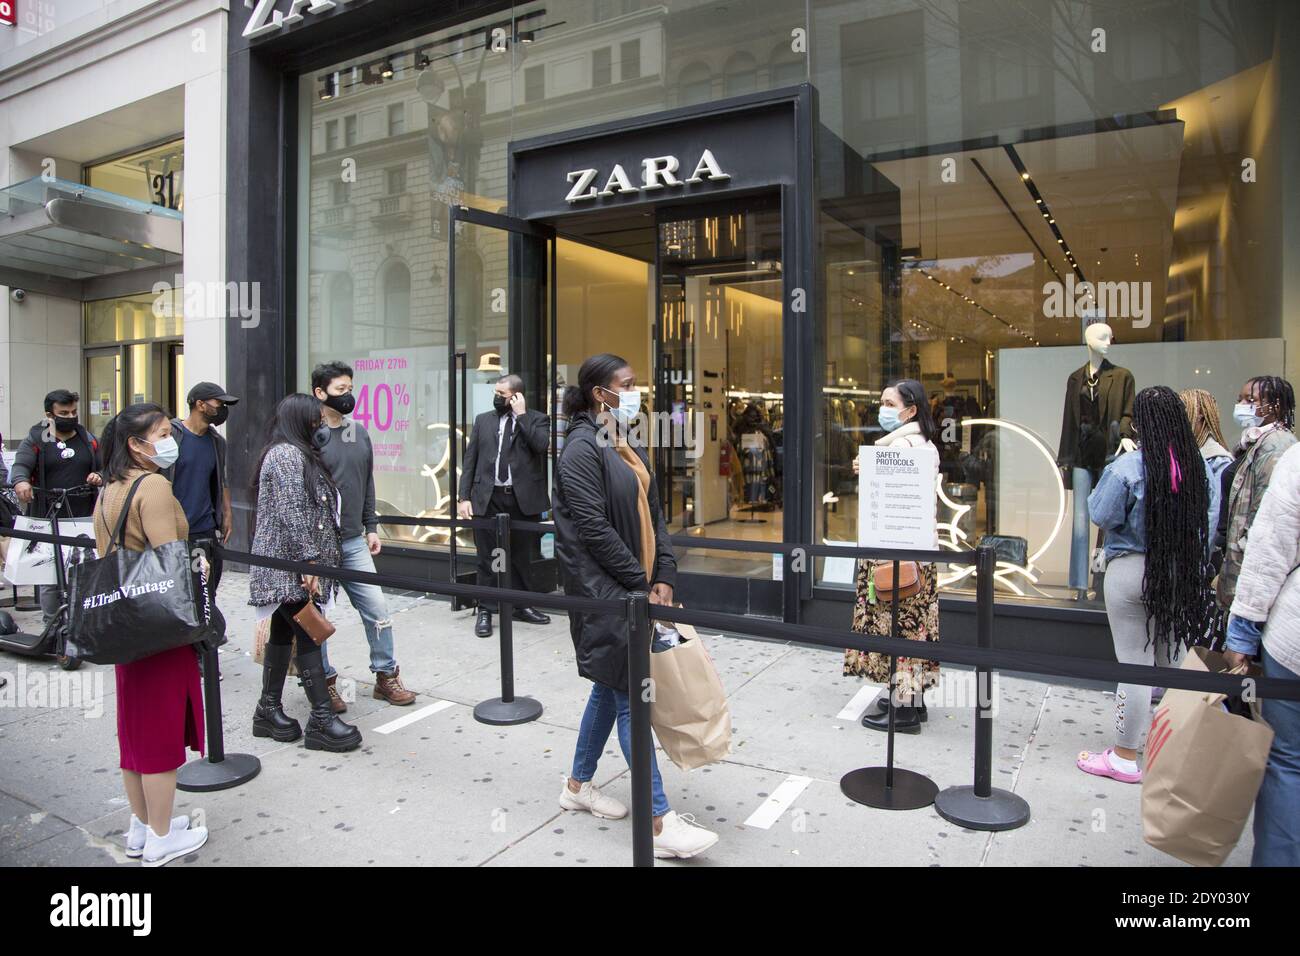 Die Menschen standen, angemessen sozial distanziert, vor einem ZARA-Laden in Manhattan, um am Black Friday 2020 während der Covid-19-Pandemie einzukaufen. Stockfoto